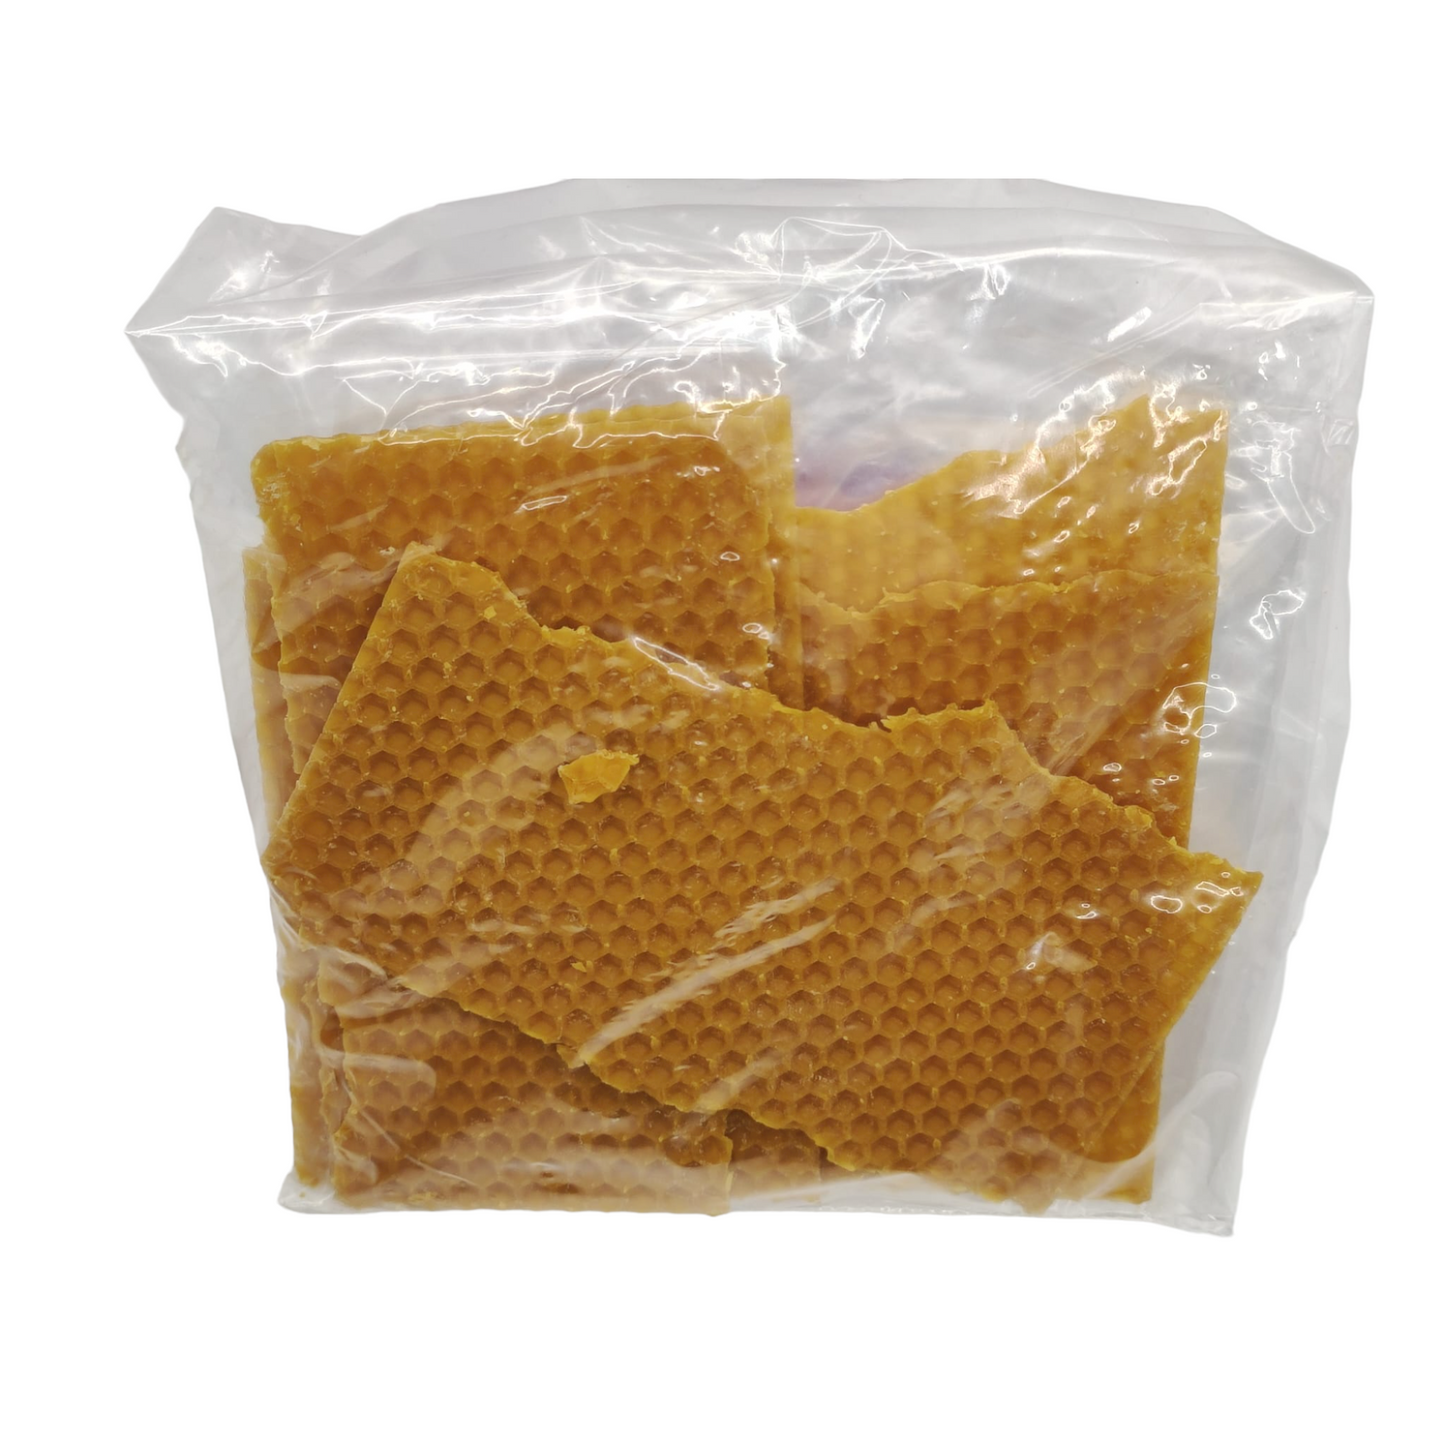 Paquete de 50 gramos de cera de abeja.